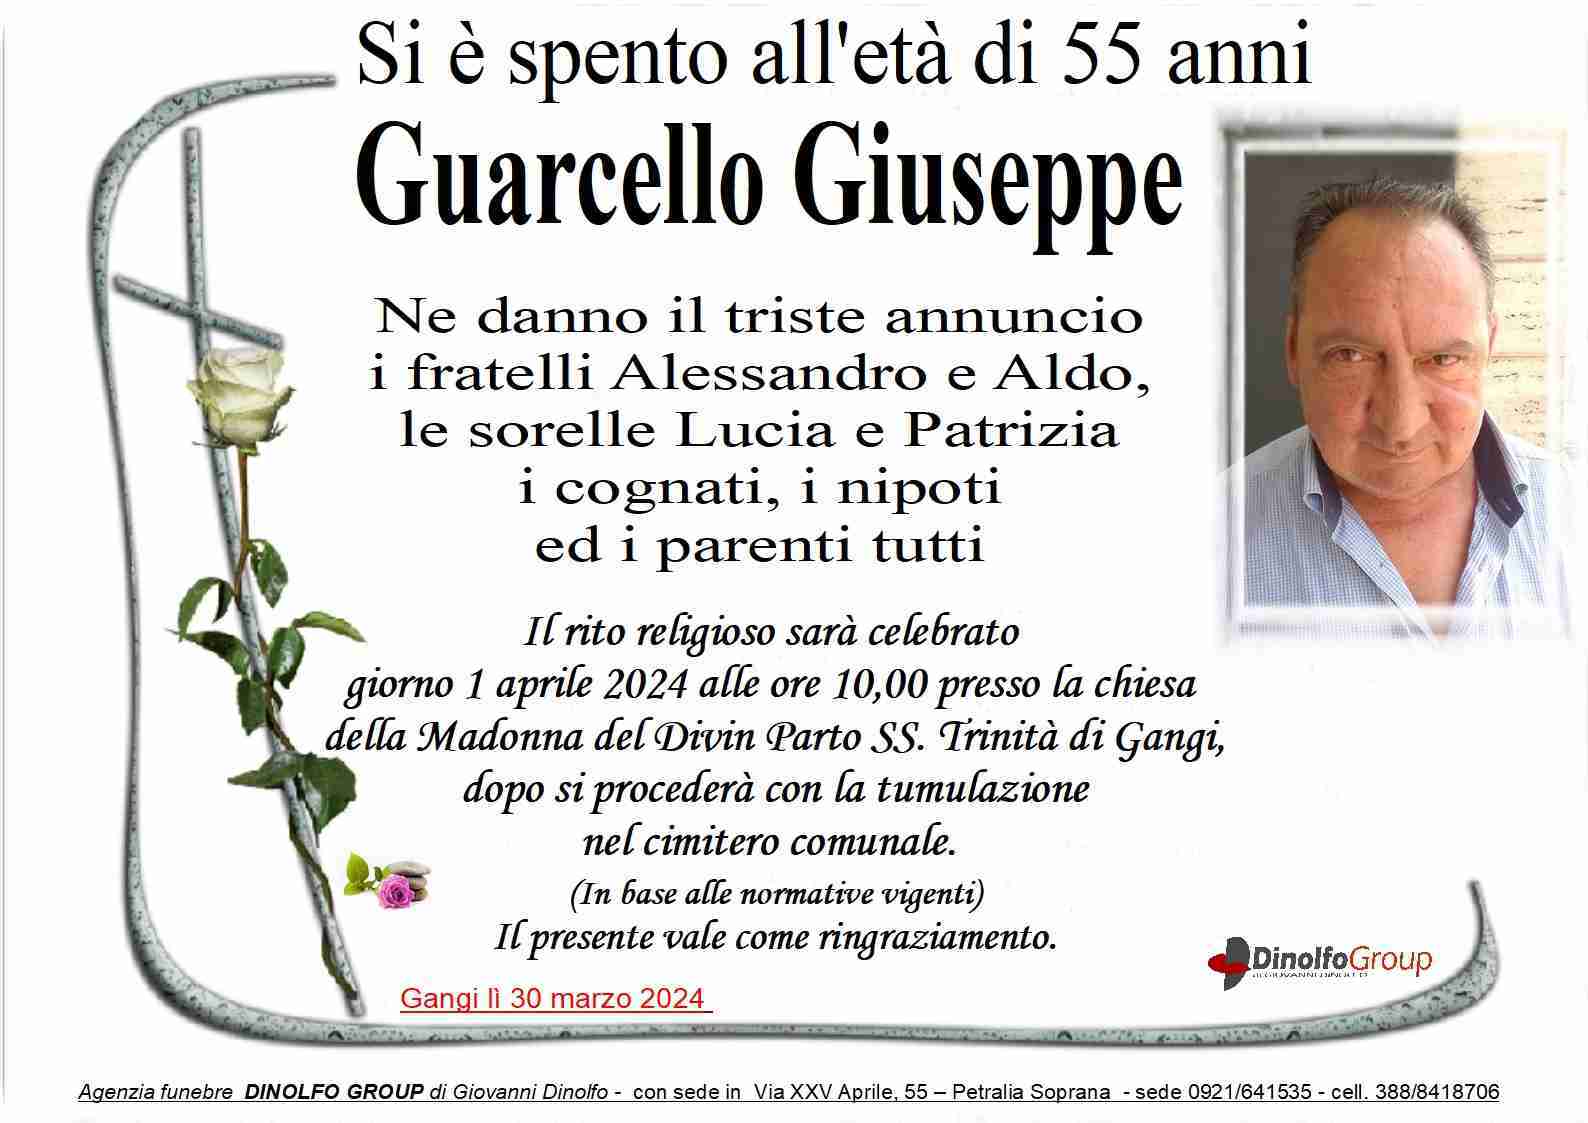 Giuseppe Guarcello